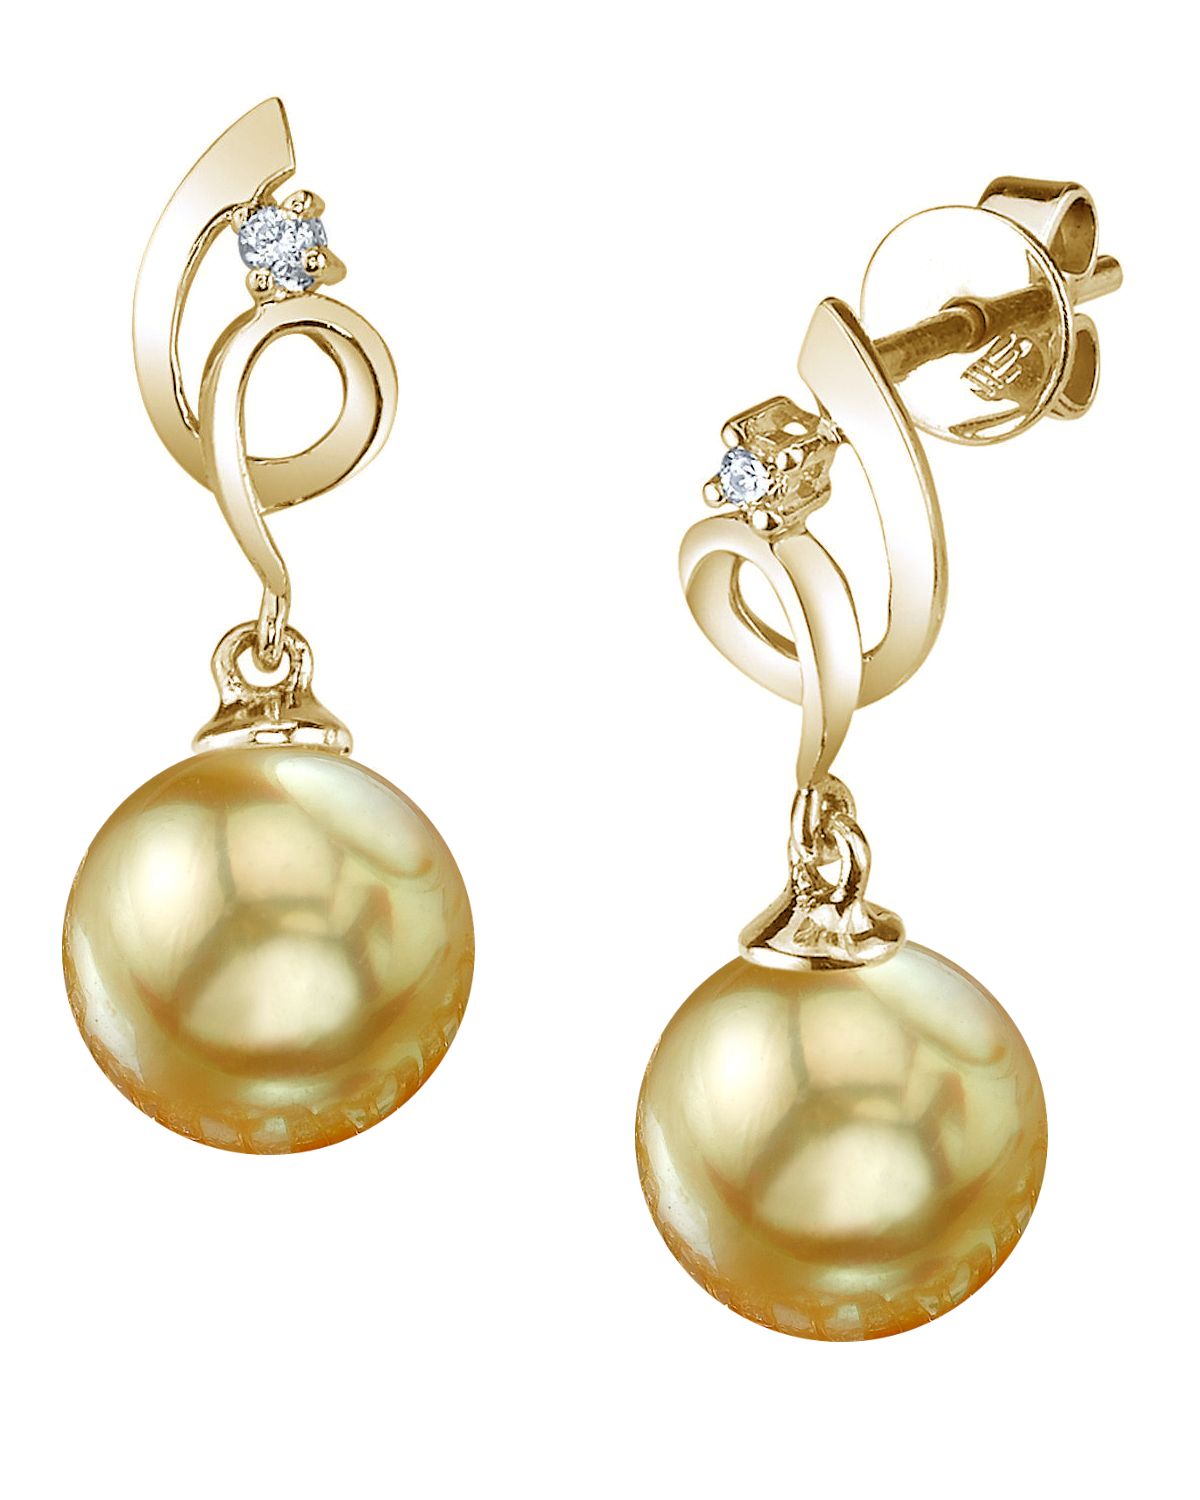 pearl earrings price